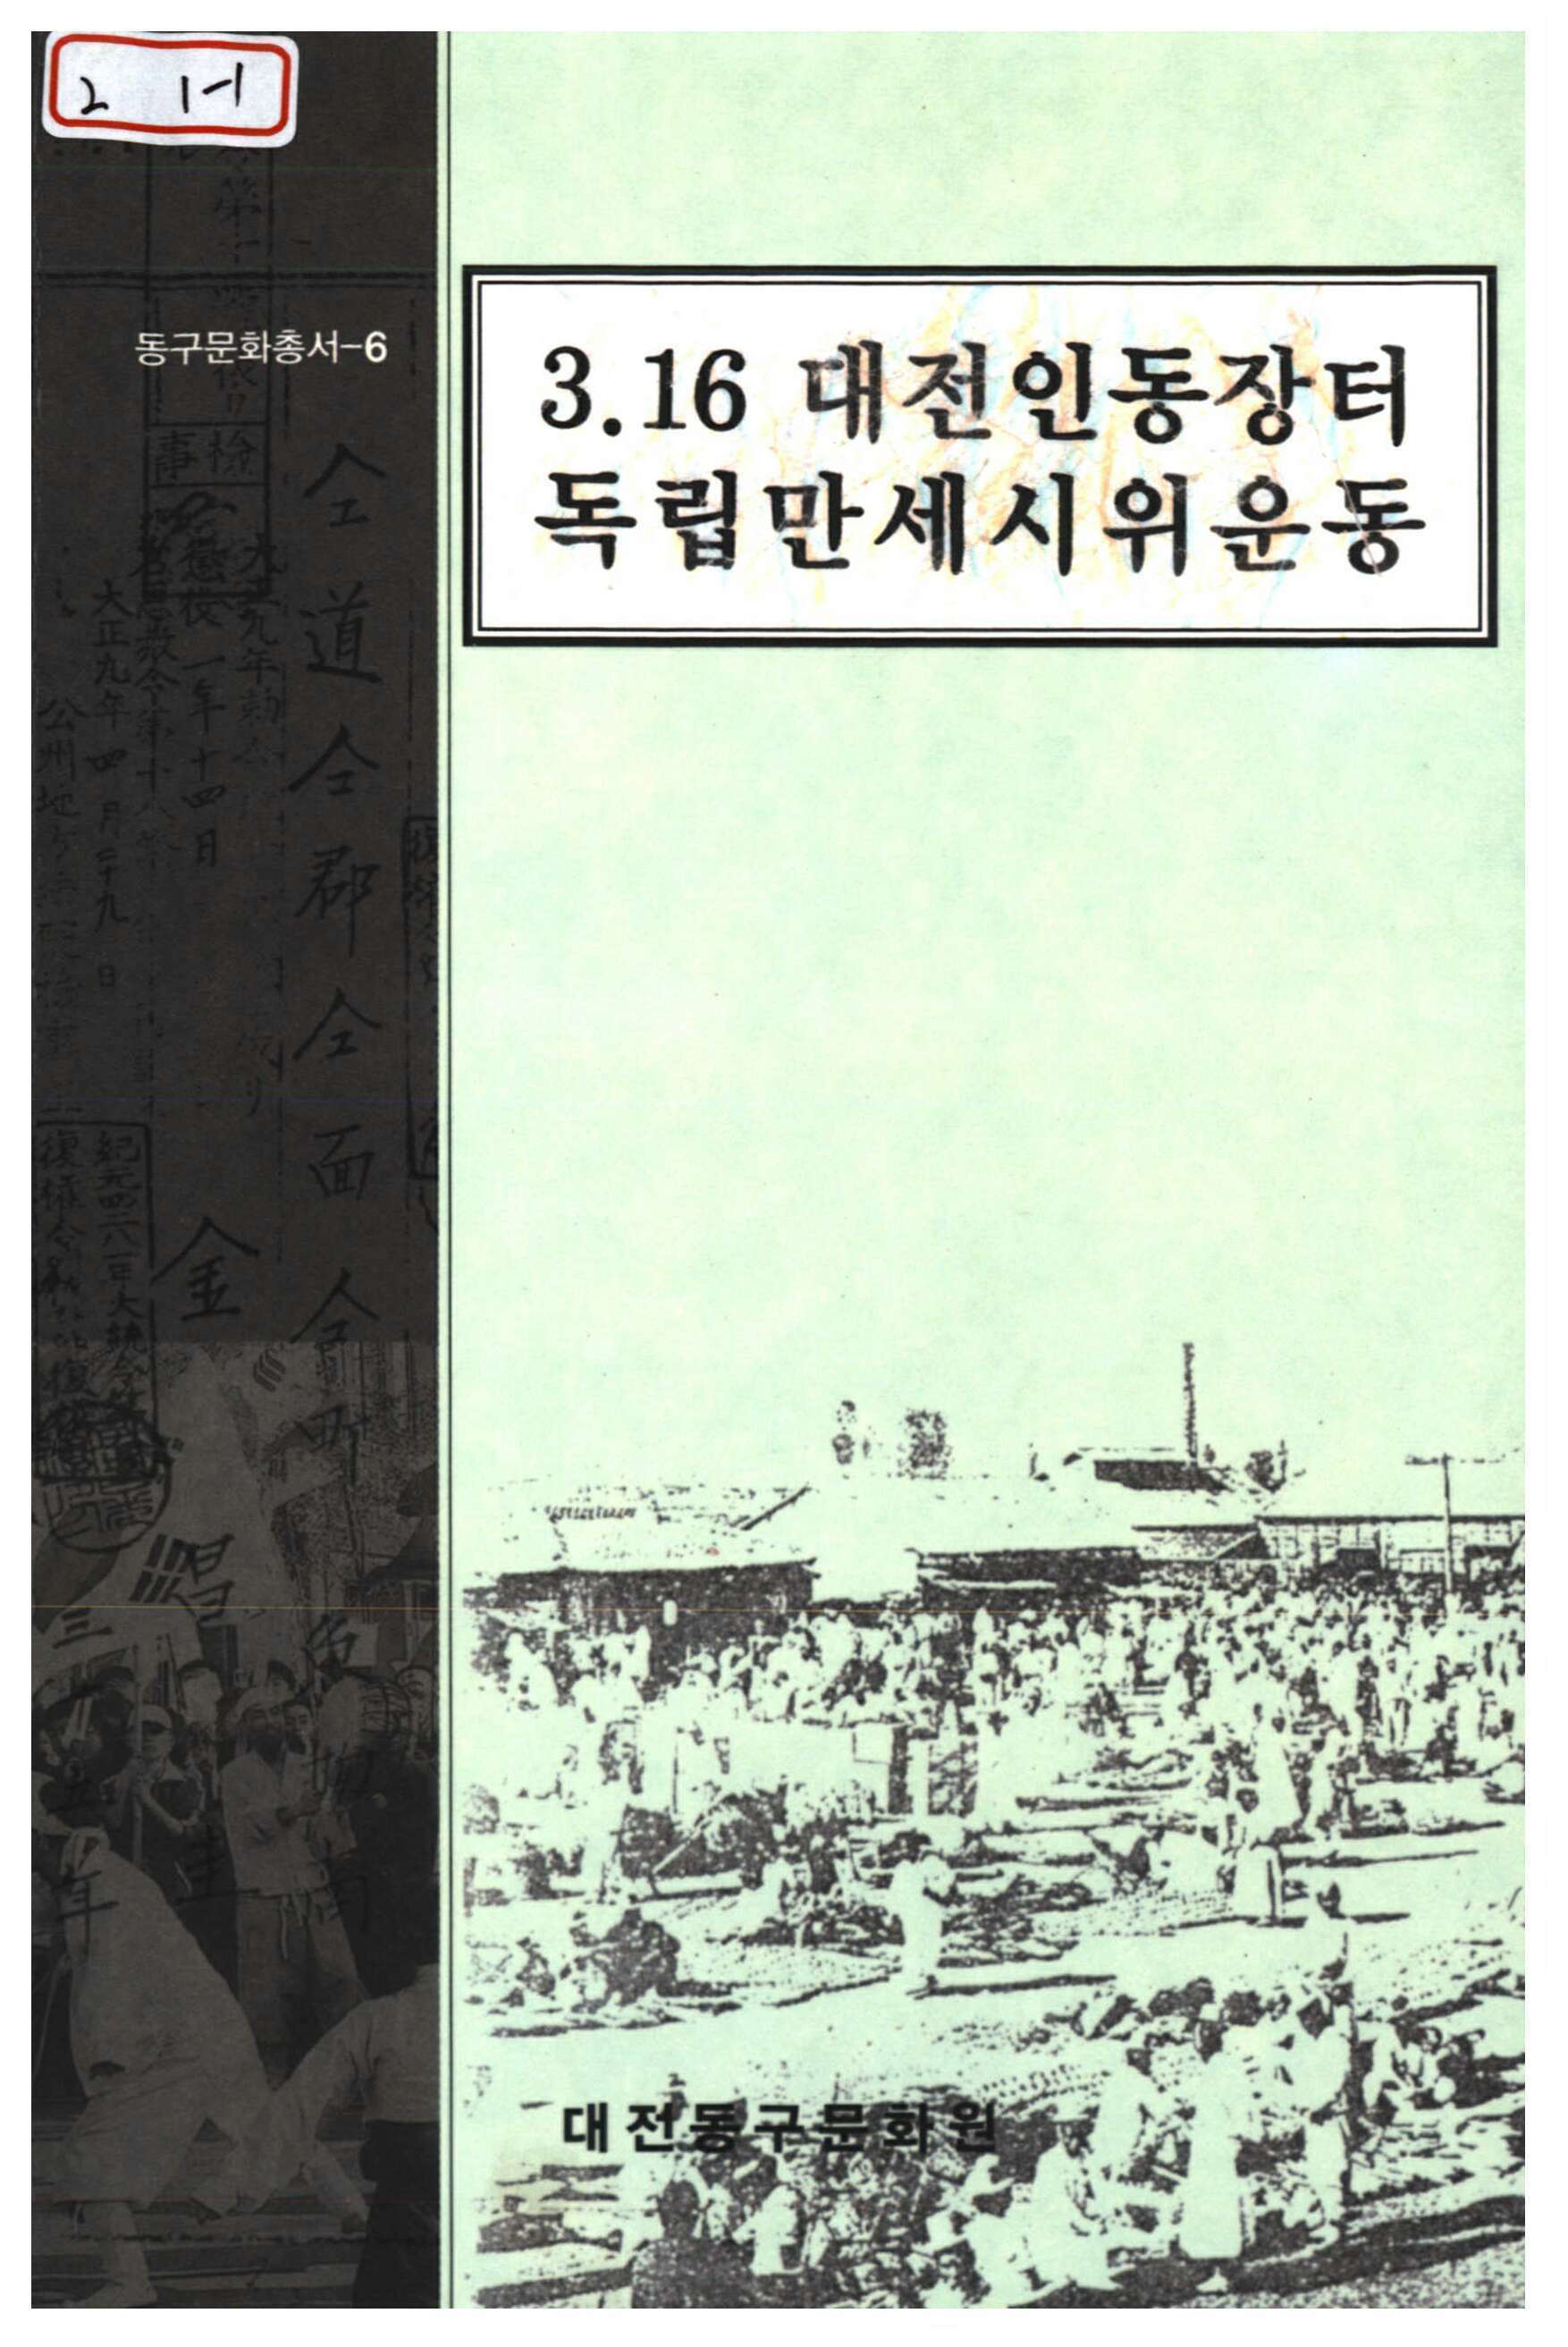 3.16 대전인동장터 독립만세 시위운동